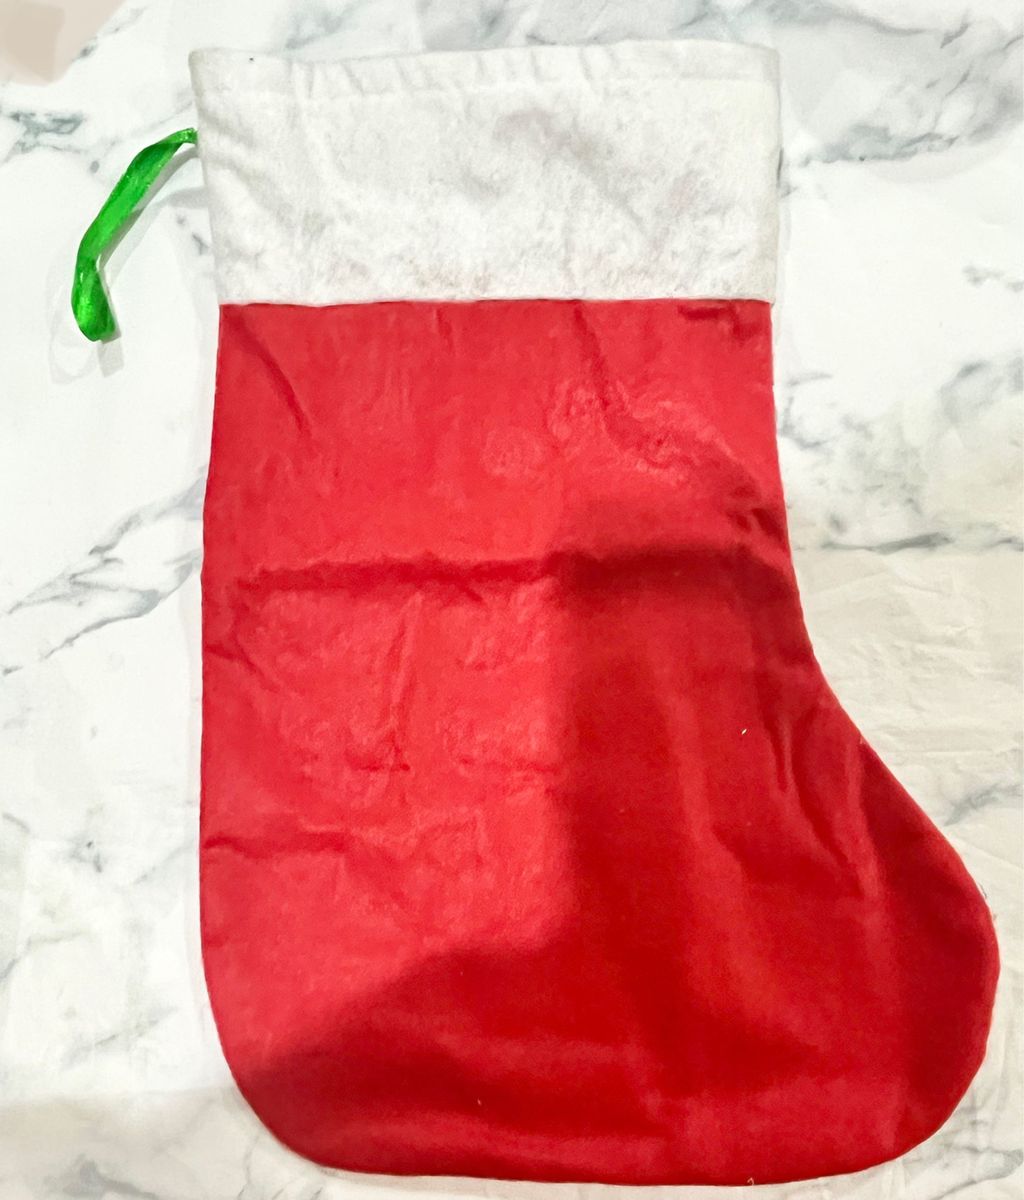 クリスマス大きな靴下 ブーツオーナメント飾り プレゼント袋 トナカイ  赤